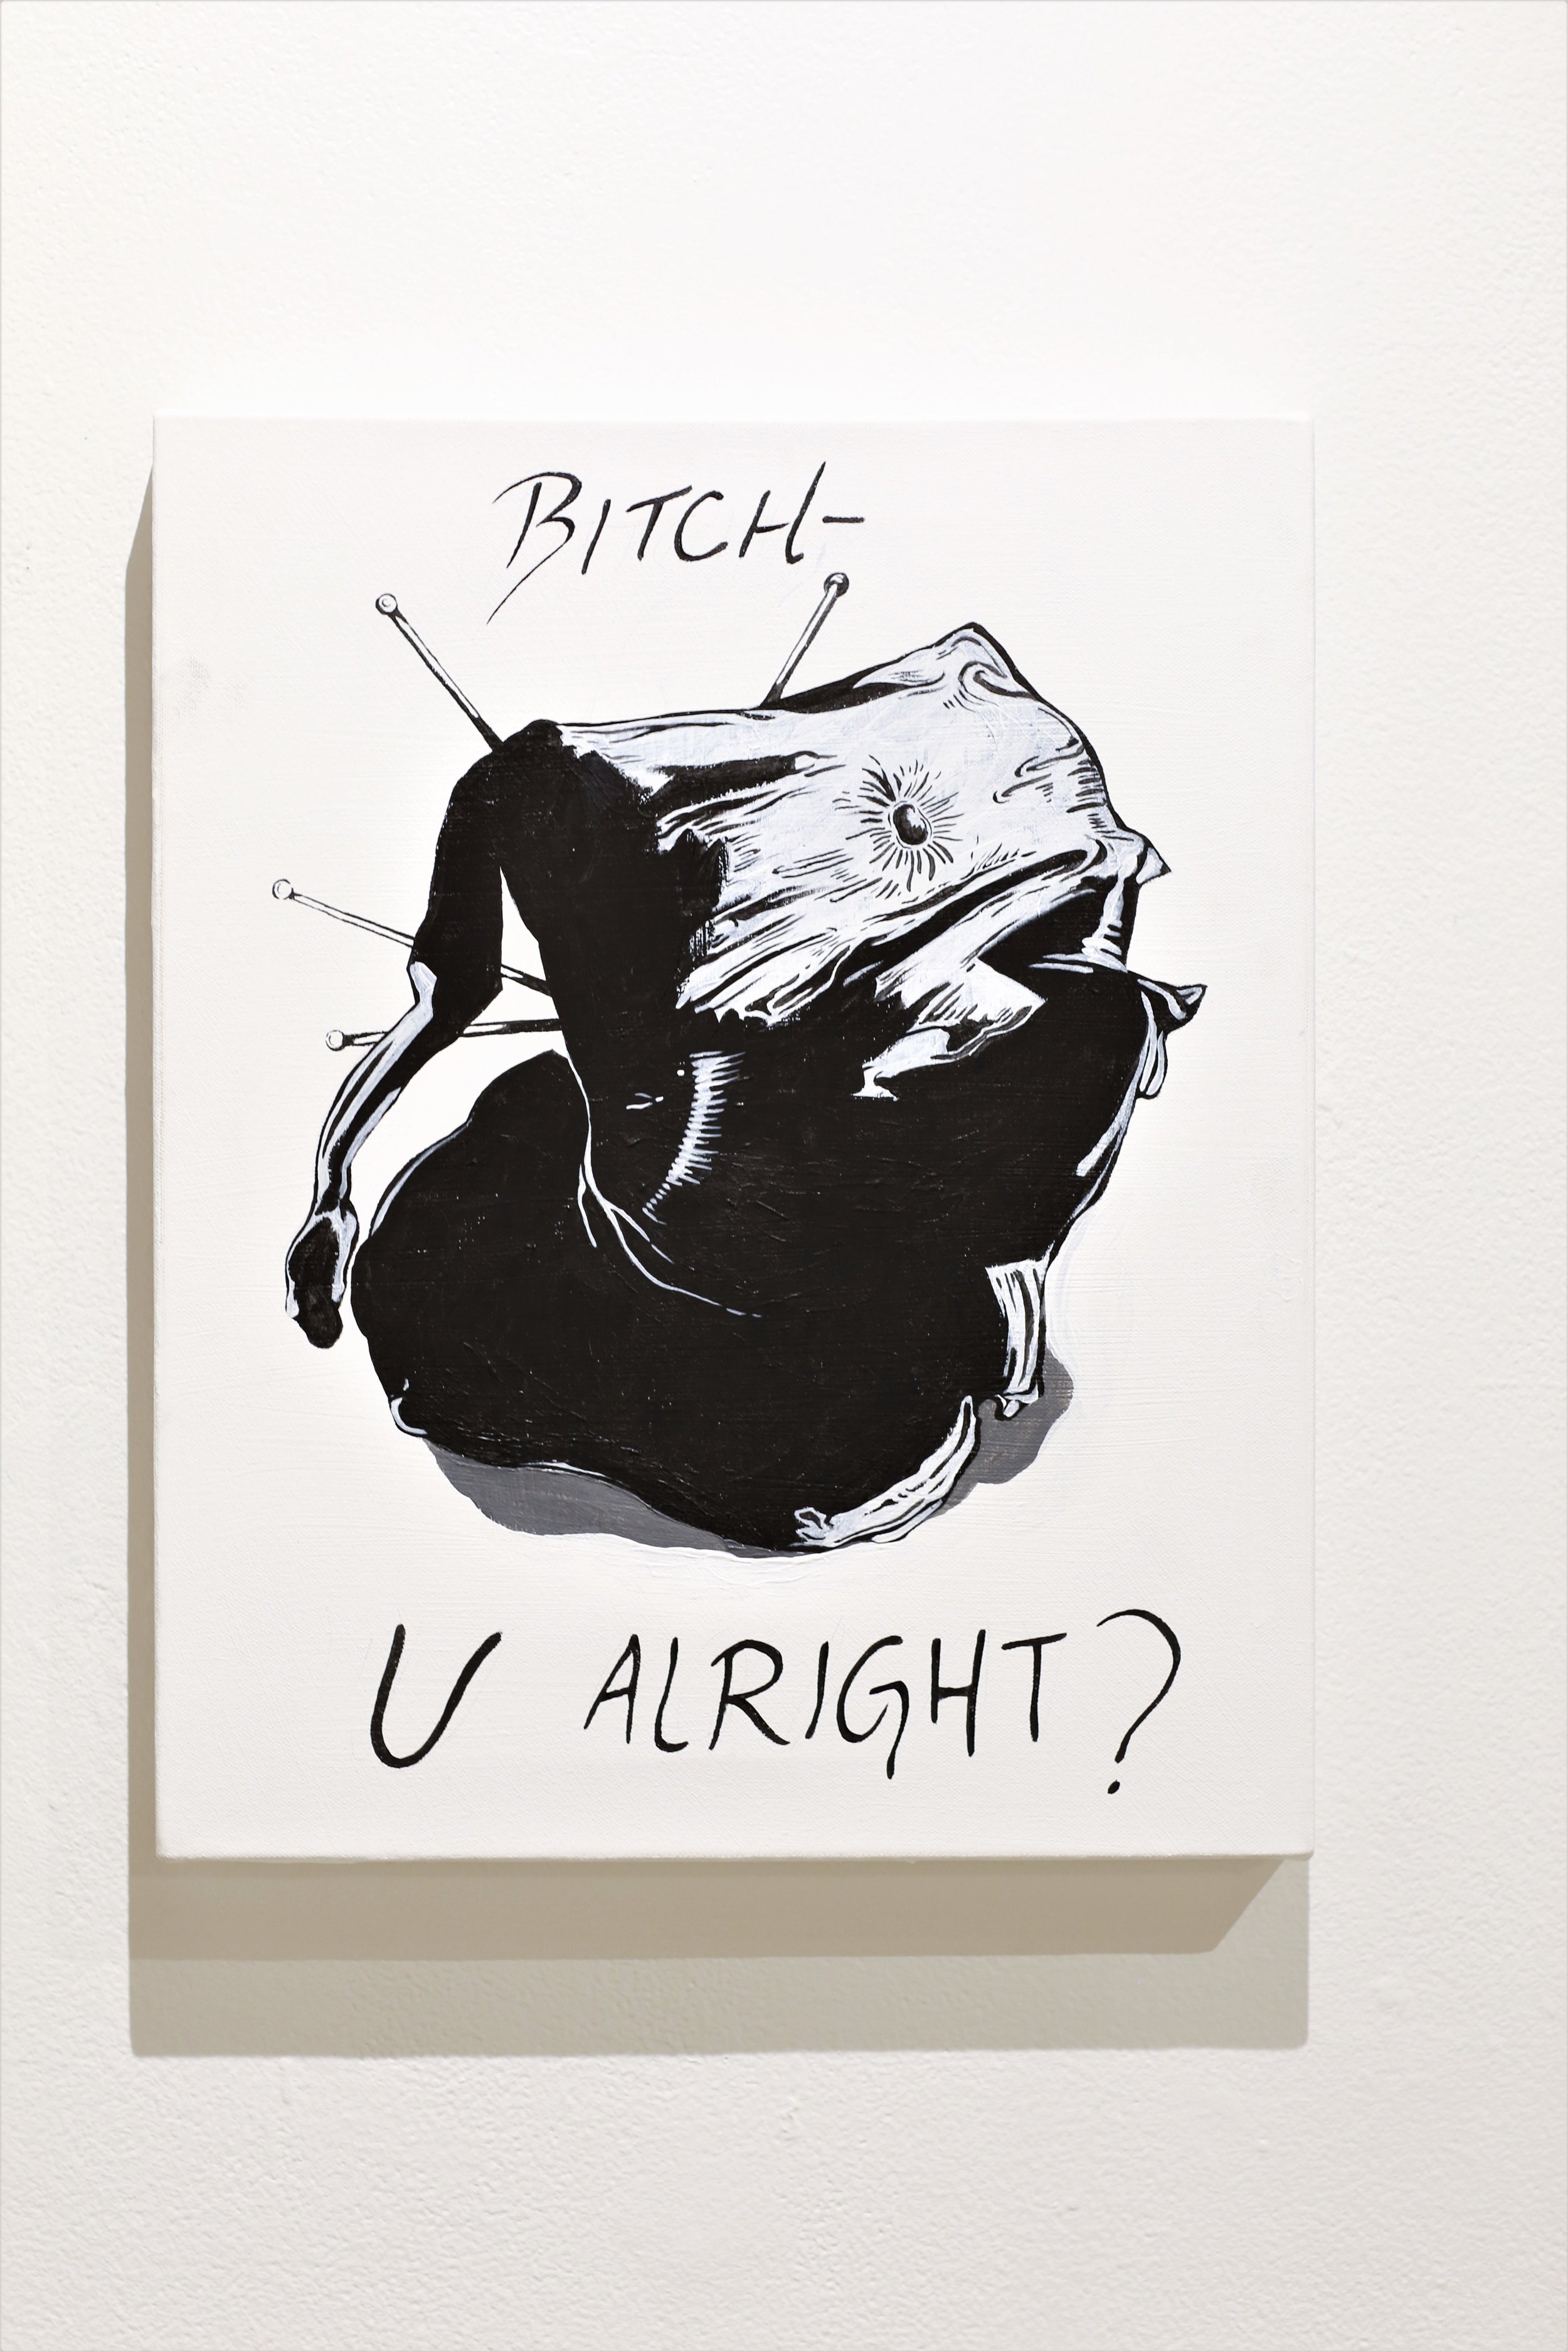   Bitch, U Alright?   Acrylic on Canvas,  2017  